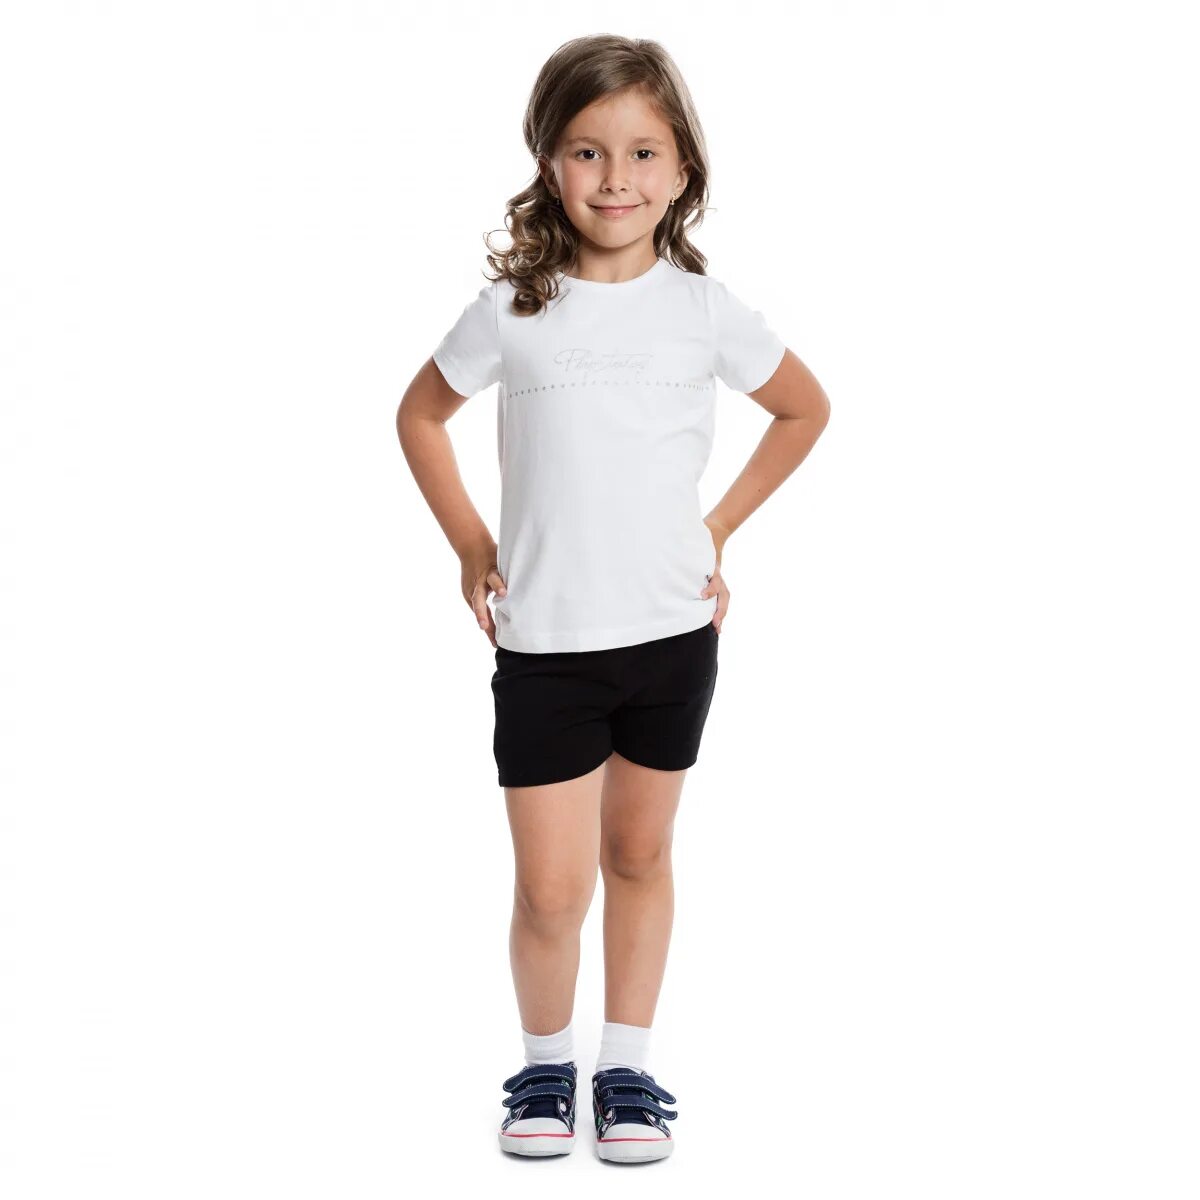 Футболки и шорты для девочек. Спортивная форма белая футболка и черные шорты. Белая футболка и черные шорты. Физкультурная форма для девочек. Спортивная форма для первоклассника.